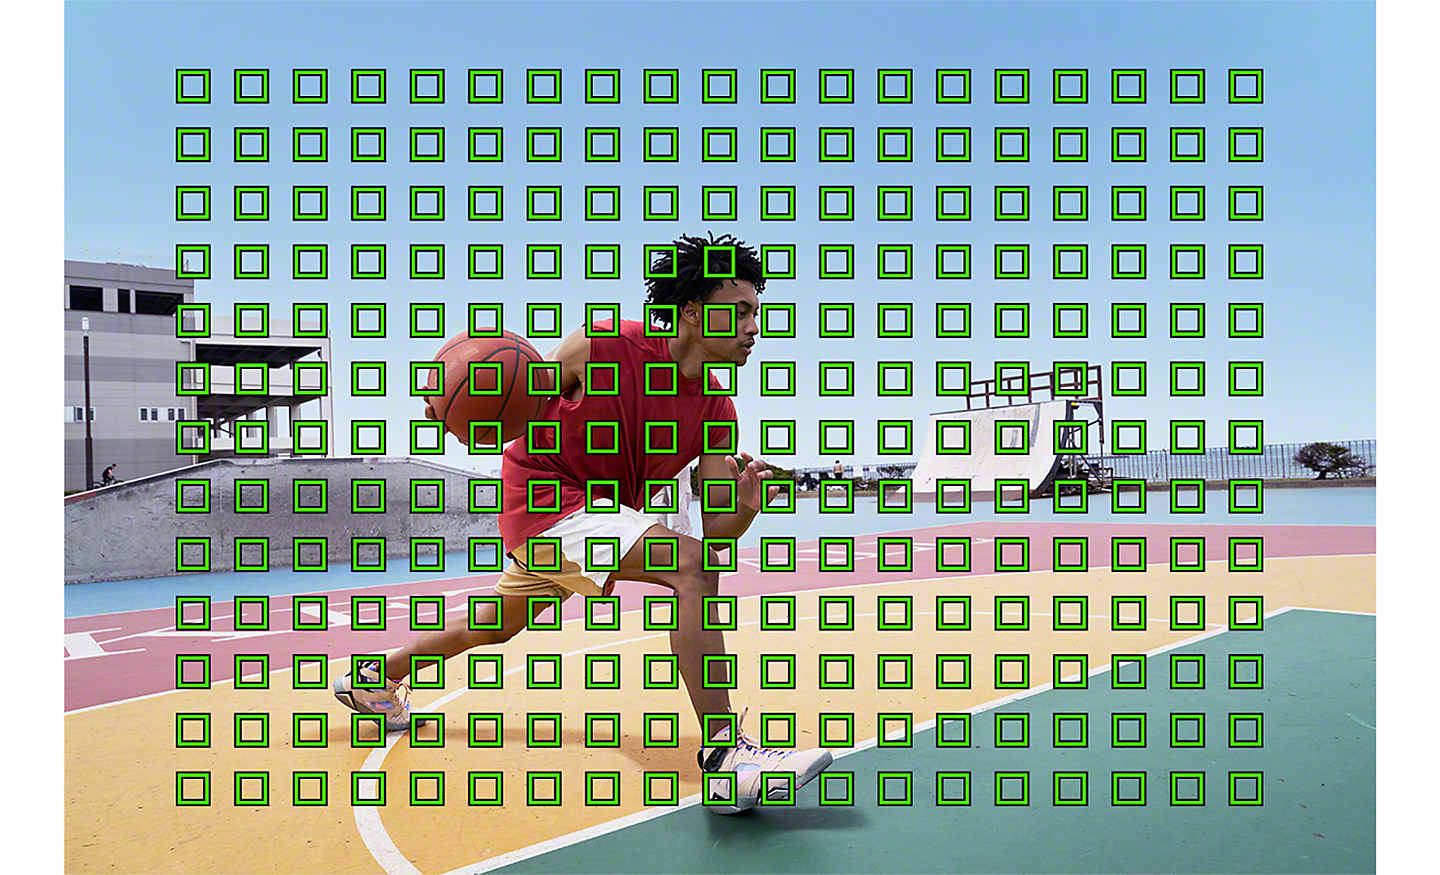 Image d'un basketteur recouverte de plusieurs petits carrés verts qui représentent la couverture AF